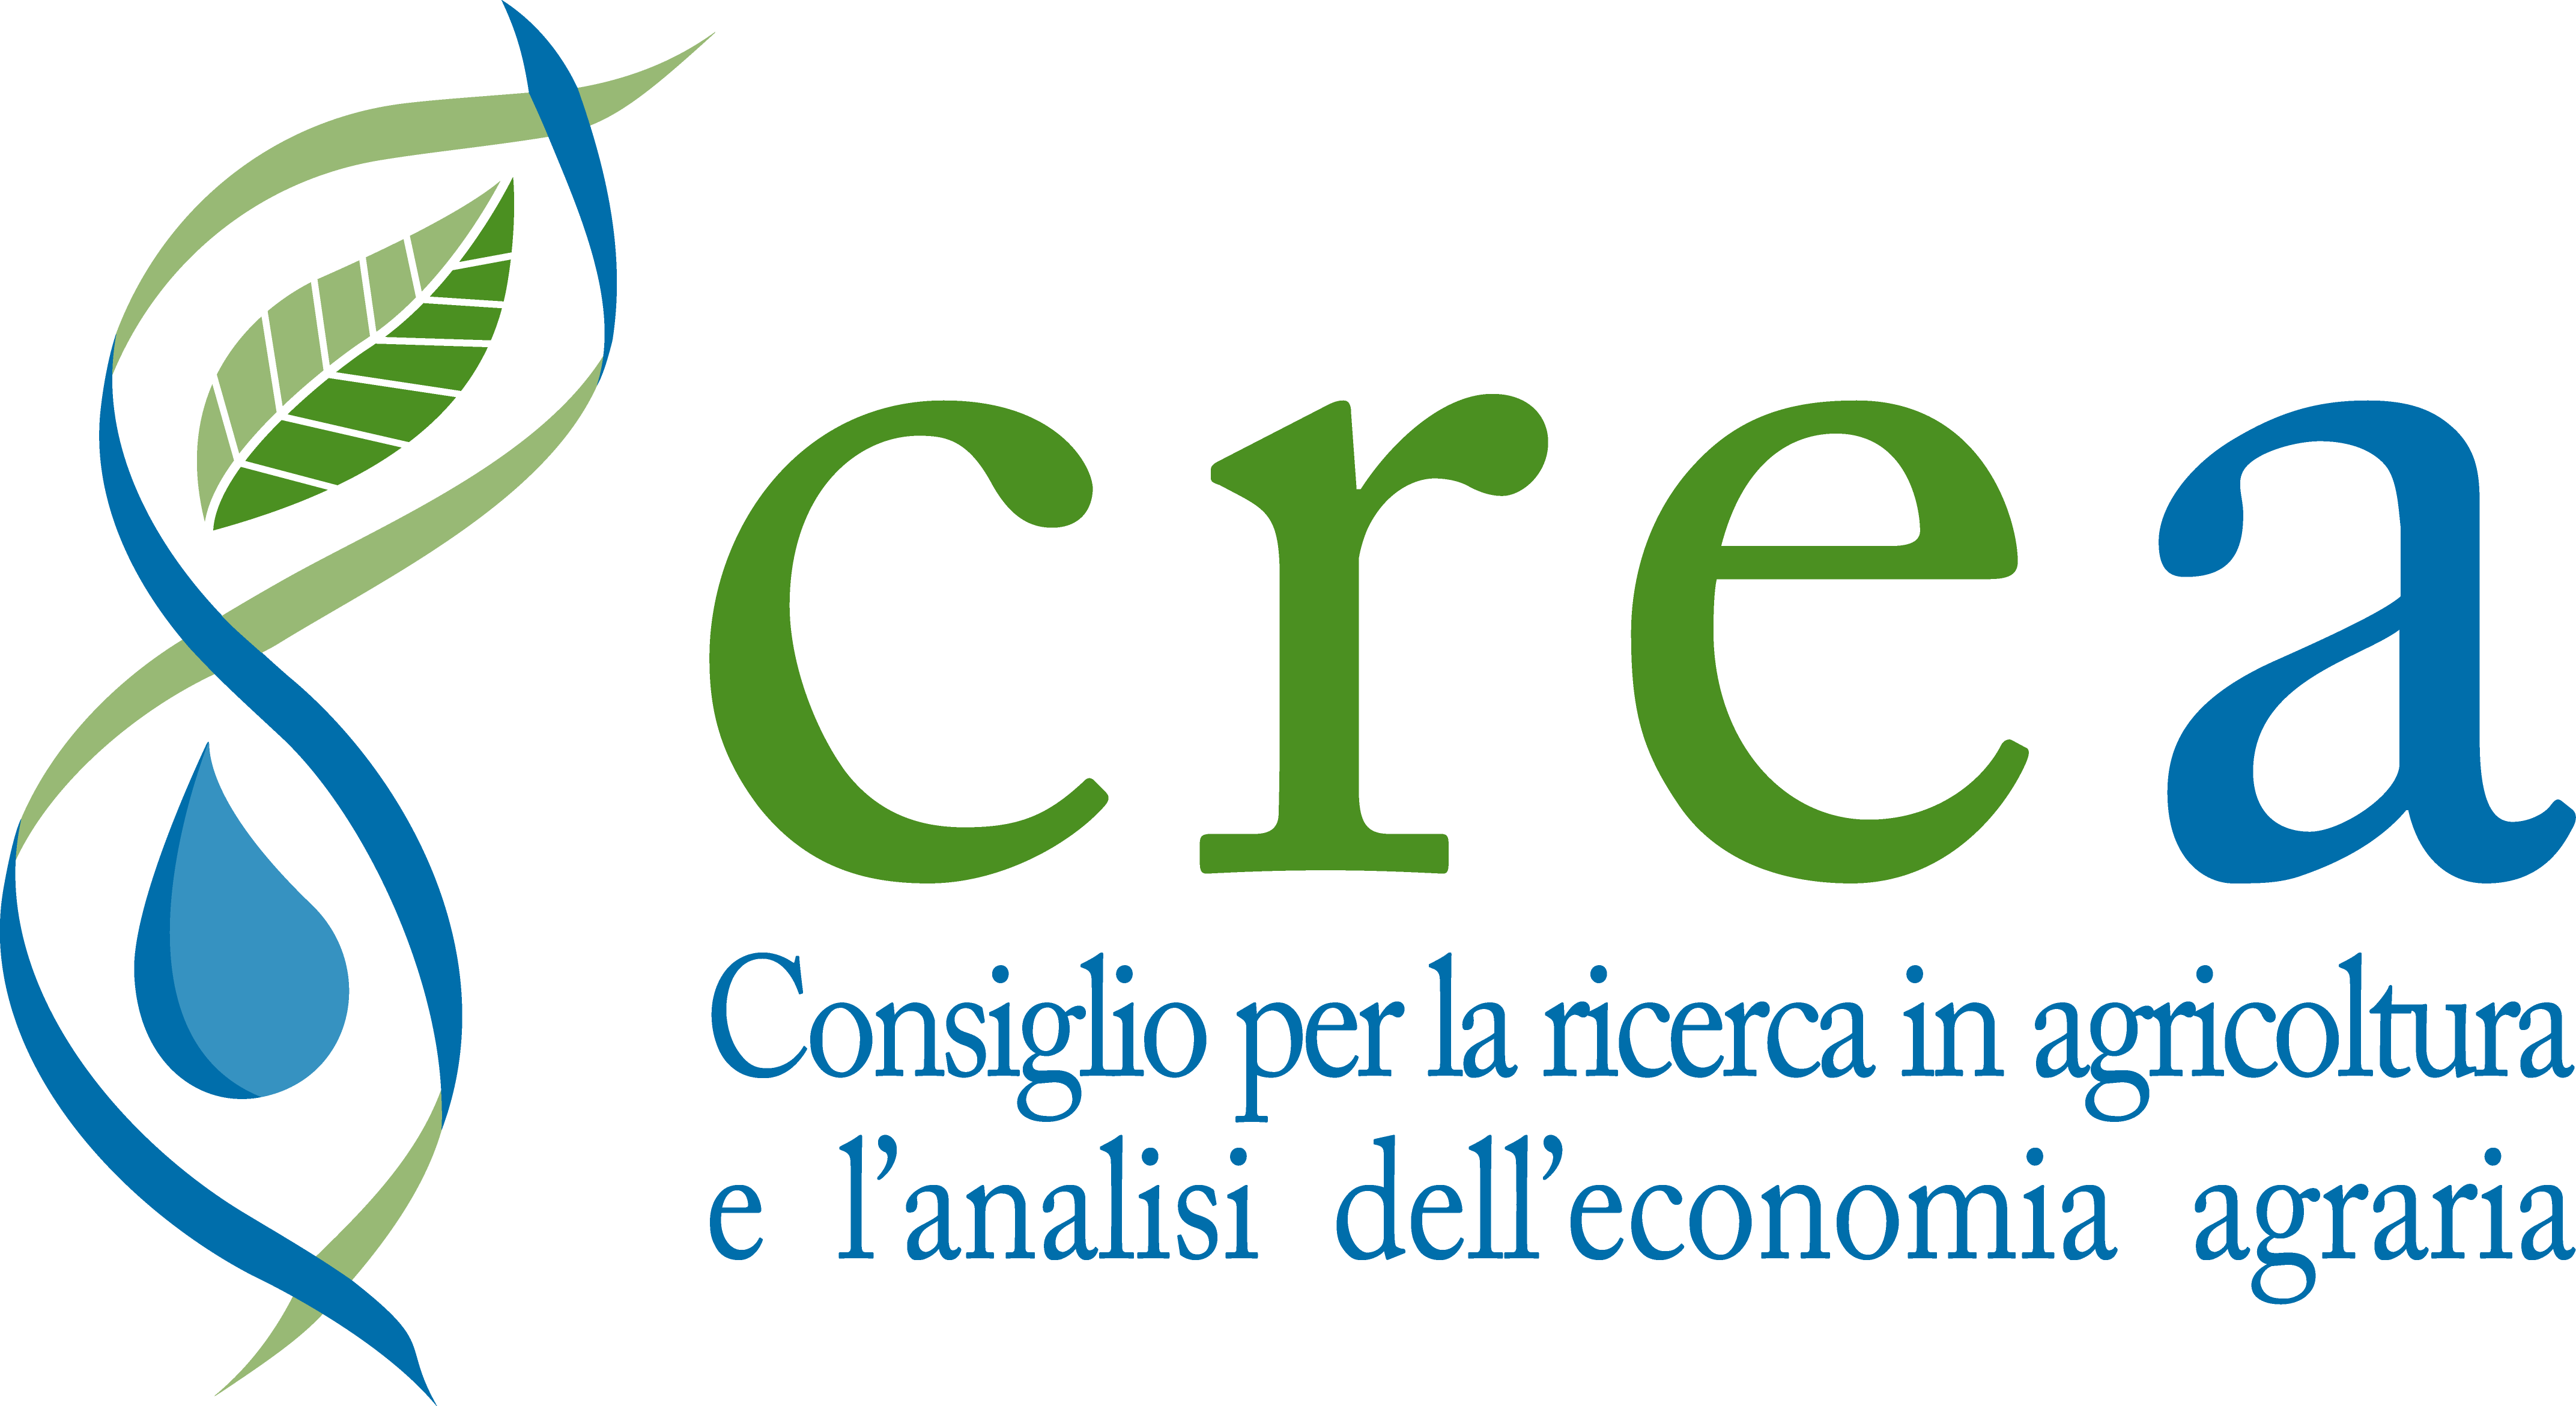 Logo CREA